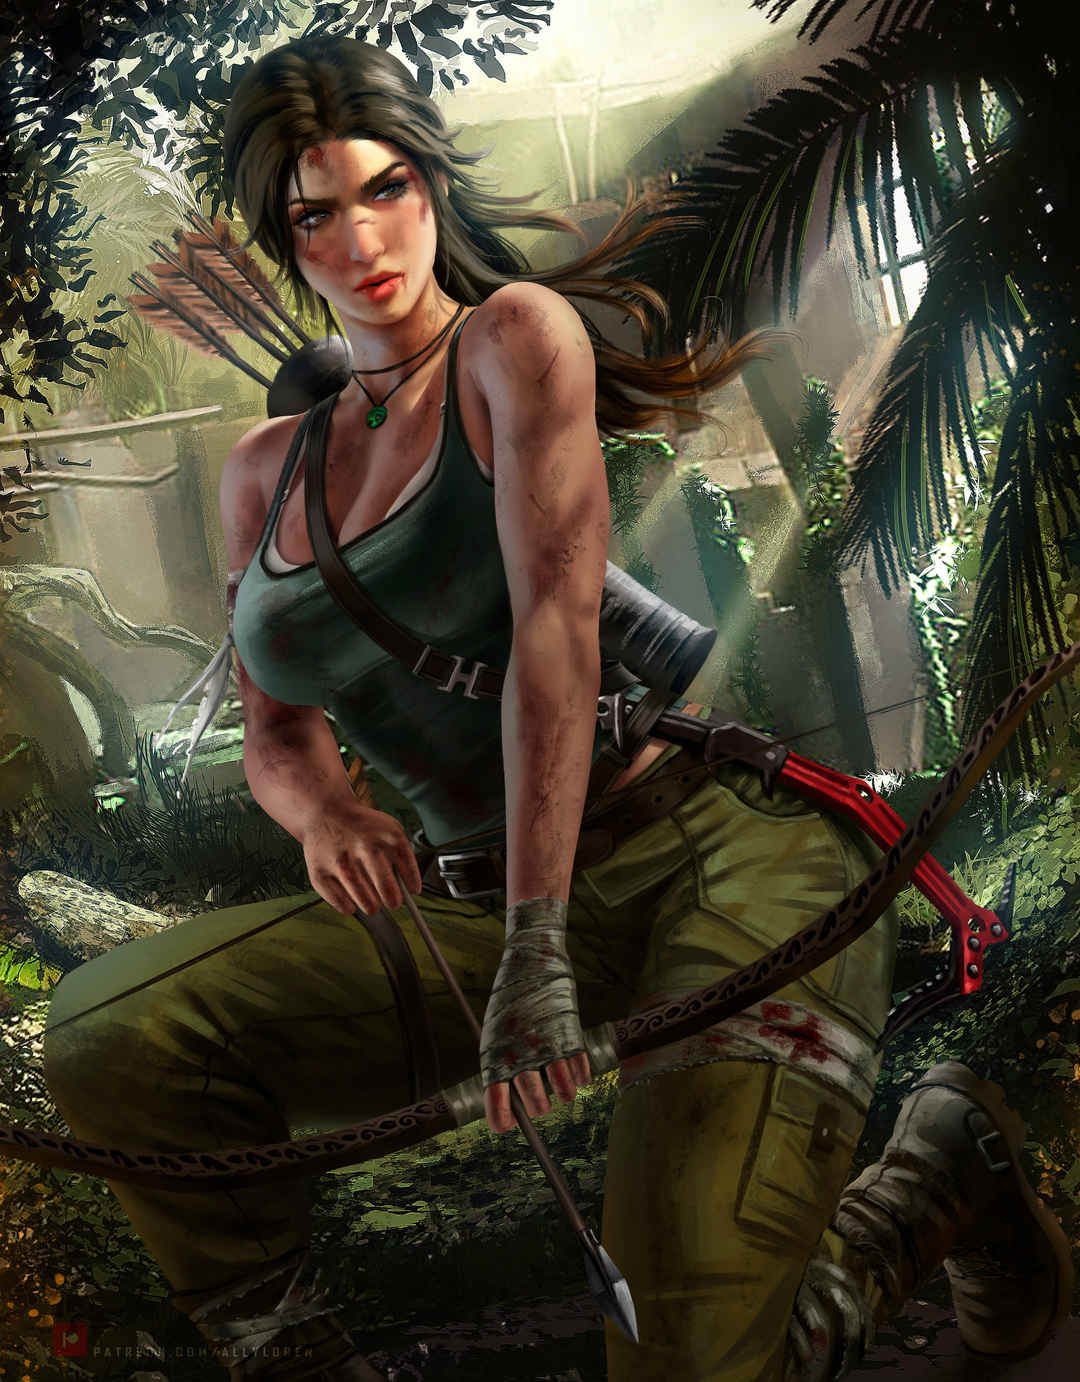 劳拉·克劳馥(Lara Croft)古墓丽影 女猎手 弓箭 丛林女王-